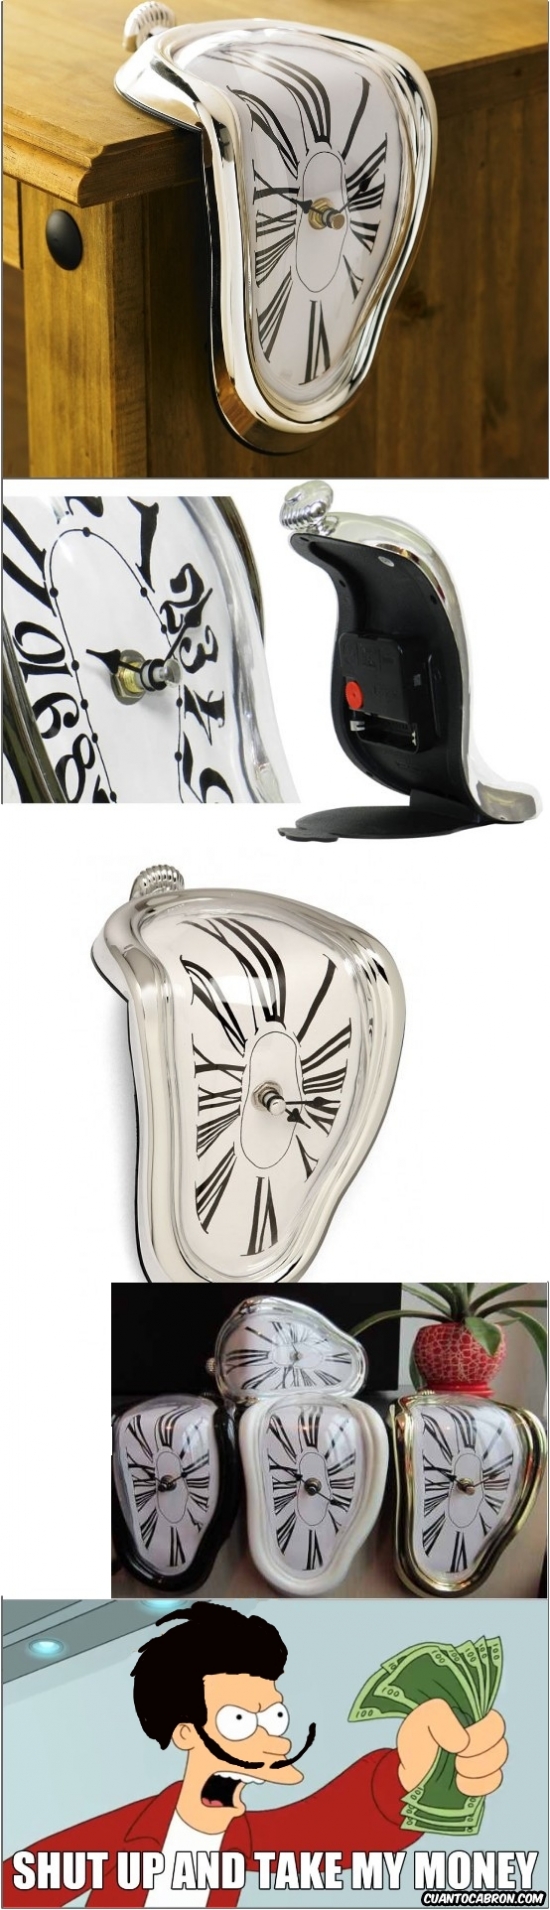 Fry - Si Dalí siguiera vivo, ¿qué pensaría de estos relojes?